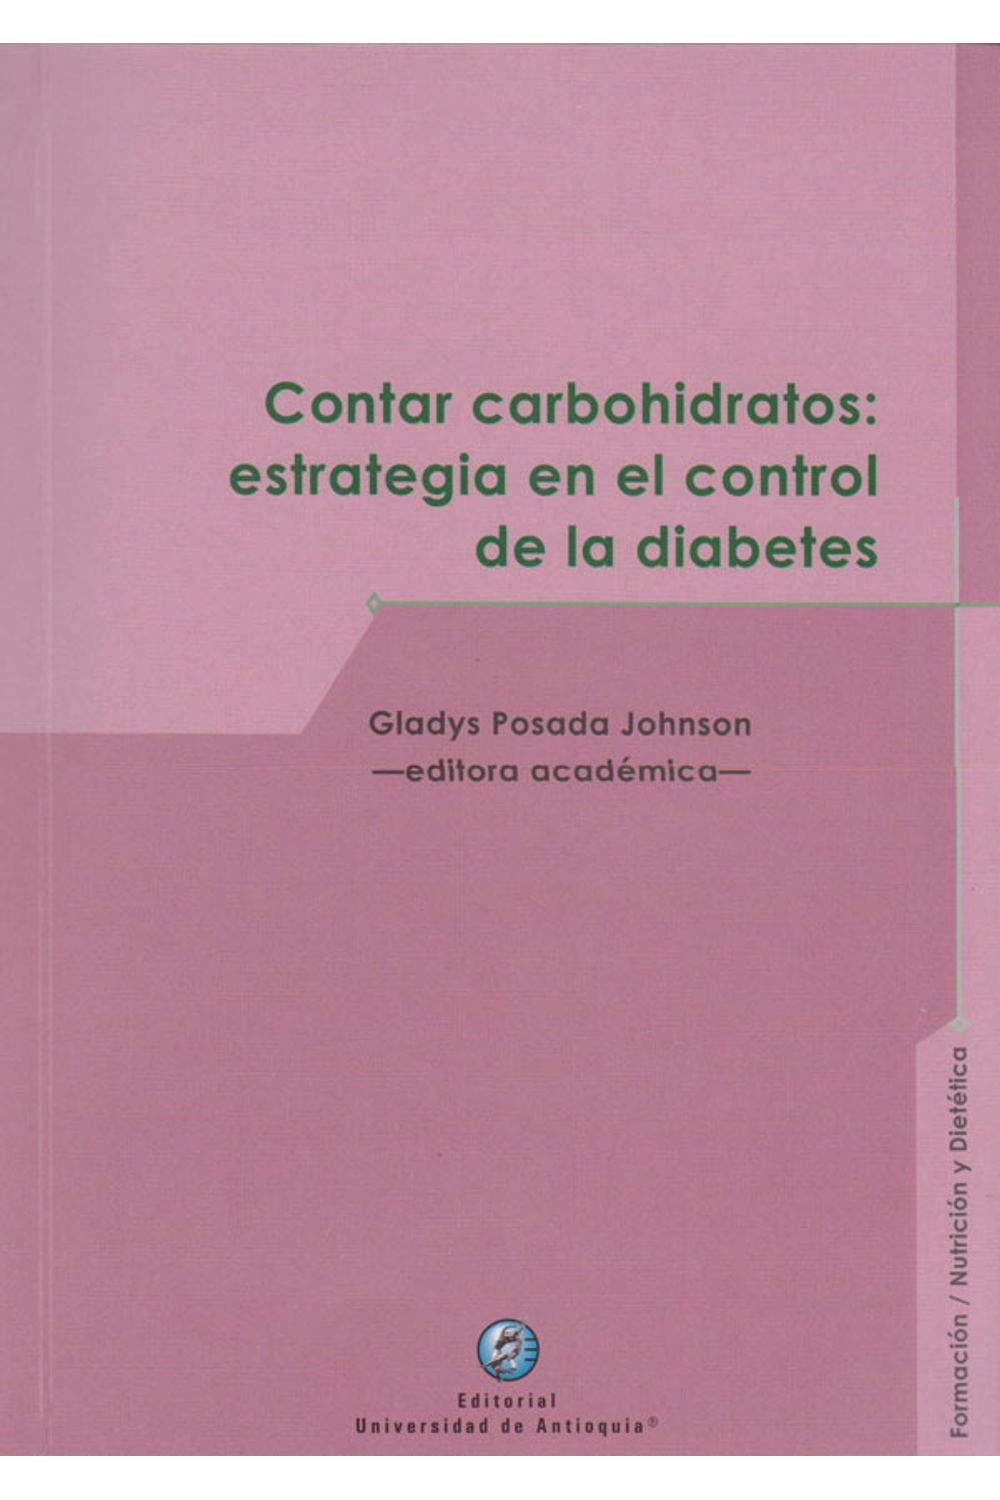 contar-carbohidratos-estrateg-control-diabetes-9789587149289-udea